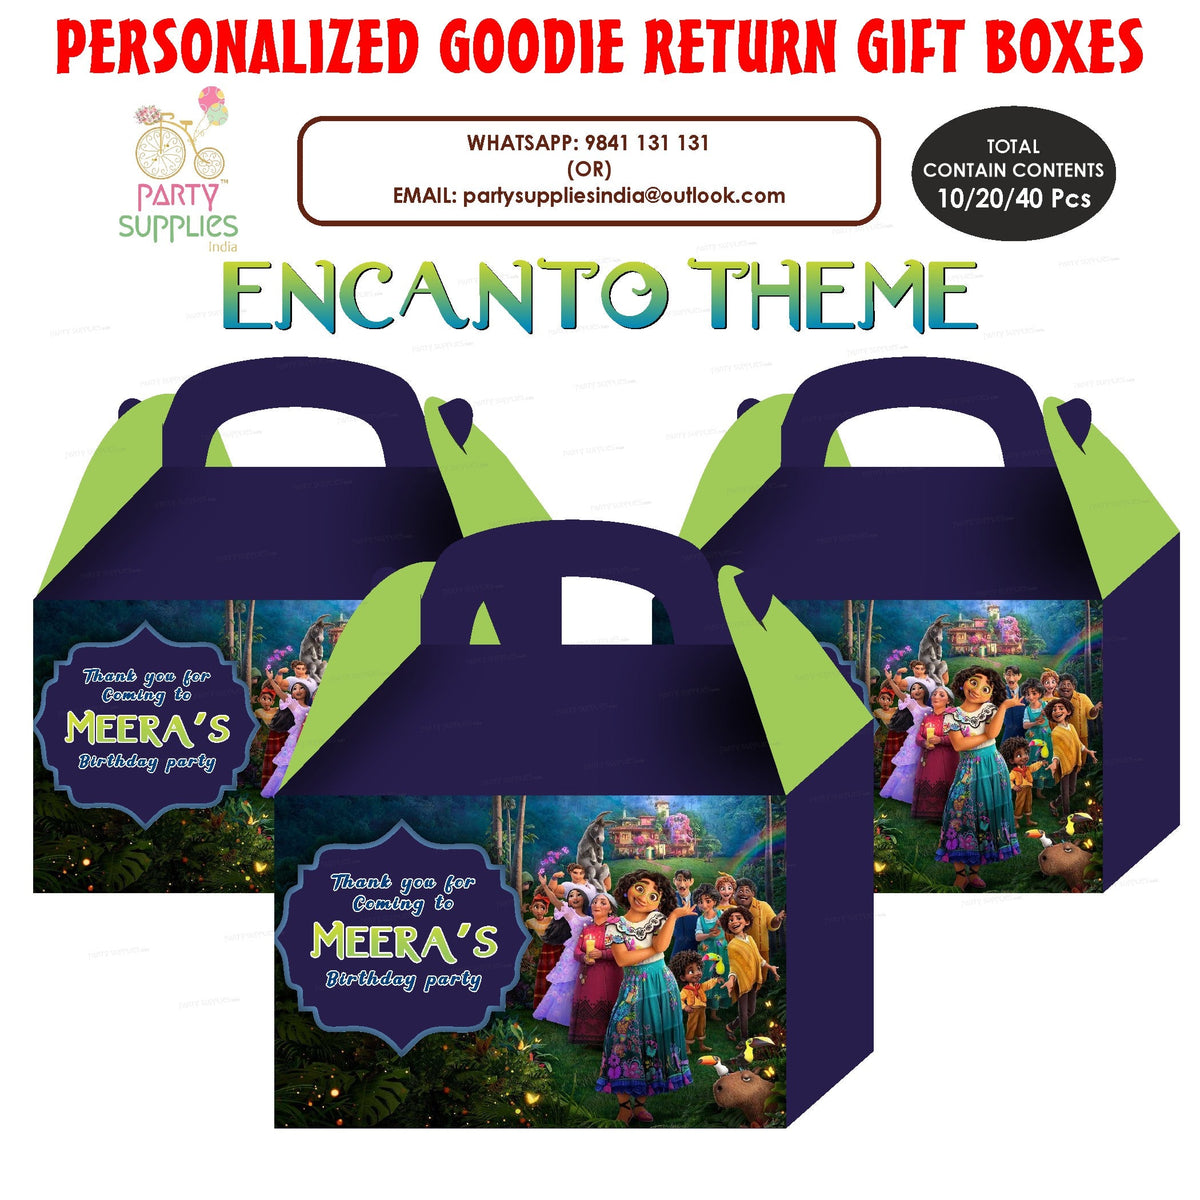 PSI Encanto theme Goodie Return Gift Boxes